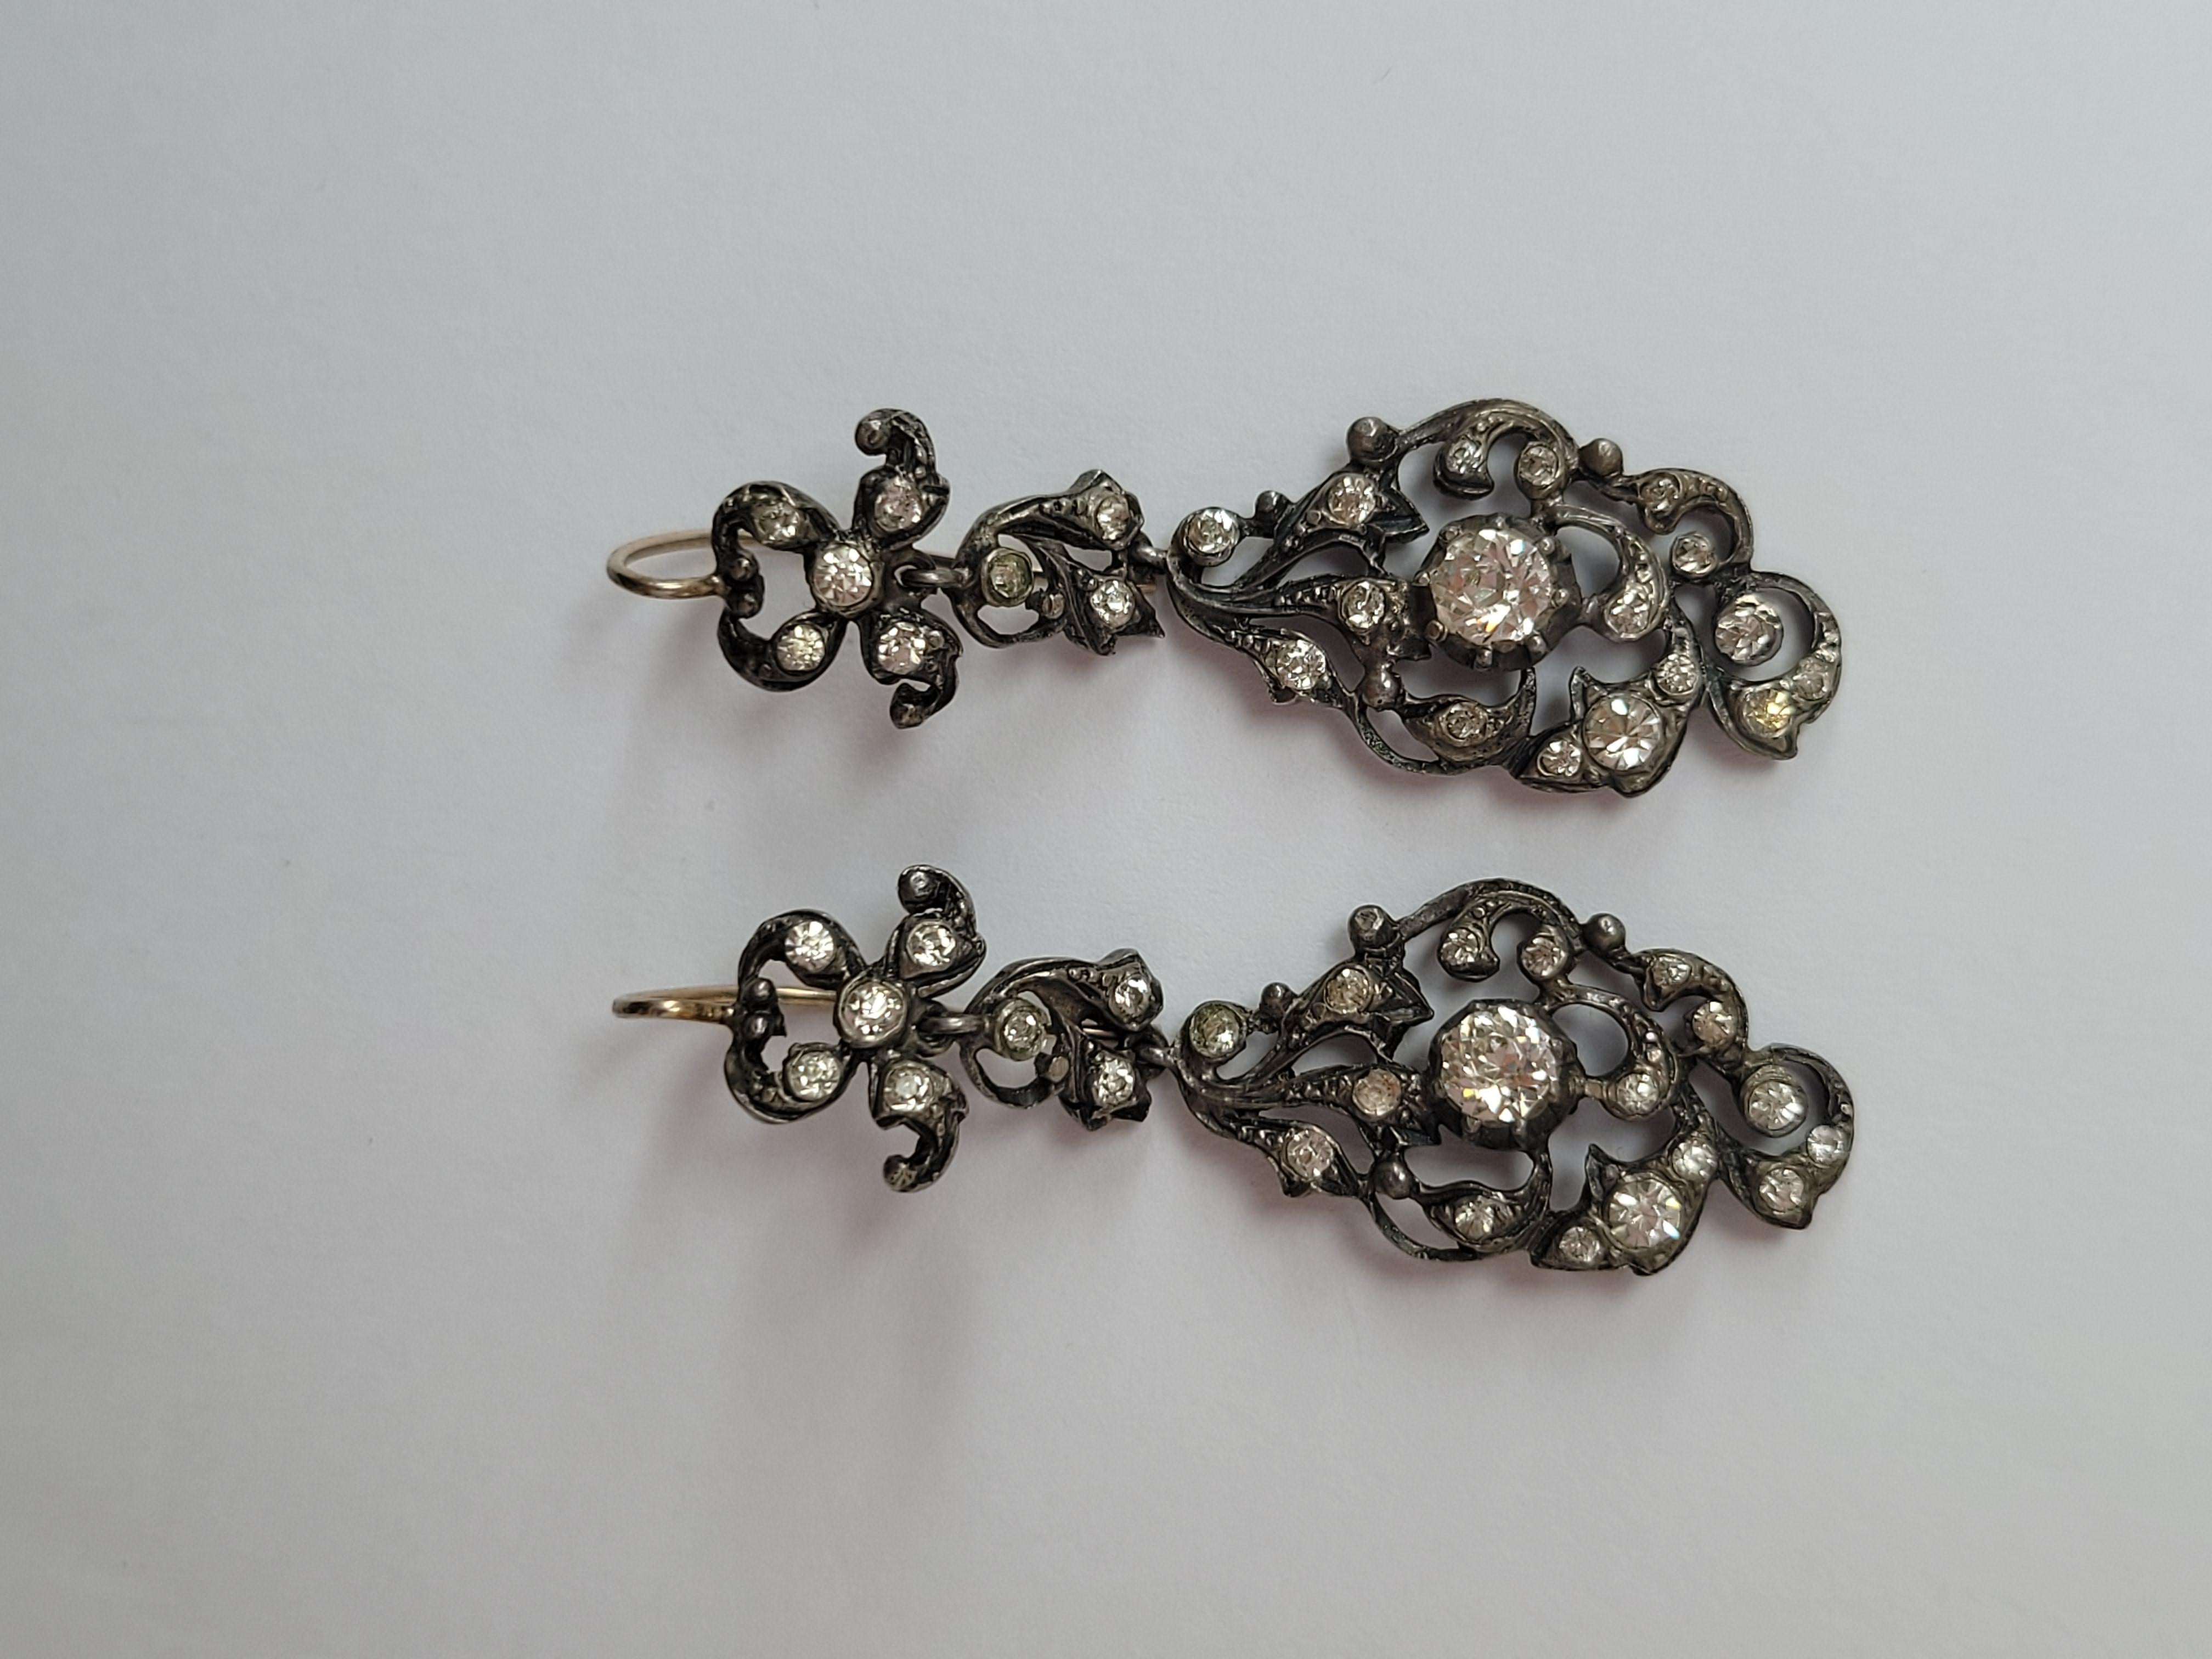 Dies ist eine spektakuläre Edwardian Zeitraum c.1900 Diamond Paste (Glas) Tropfen Ohrringe in massivem Silber montieren mit einem Goldhaken. Die Ohrringe sind im georgianischen Stil gefertigt.
Gesamttiefe einschließlich Haken 48 mm, Breite 15